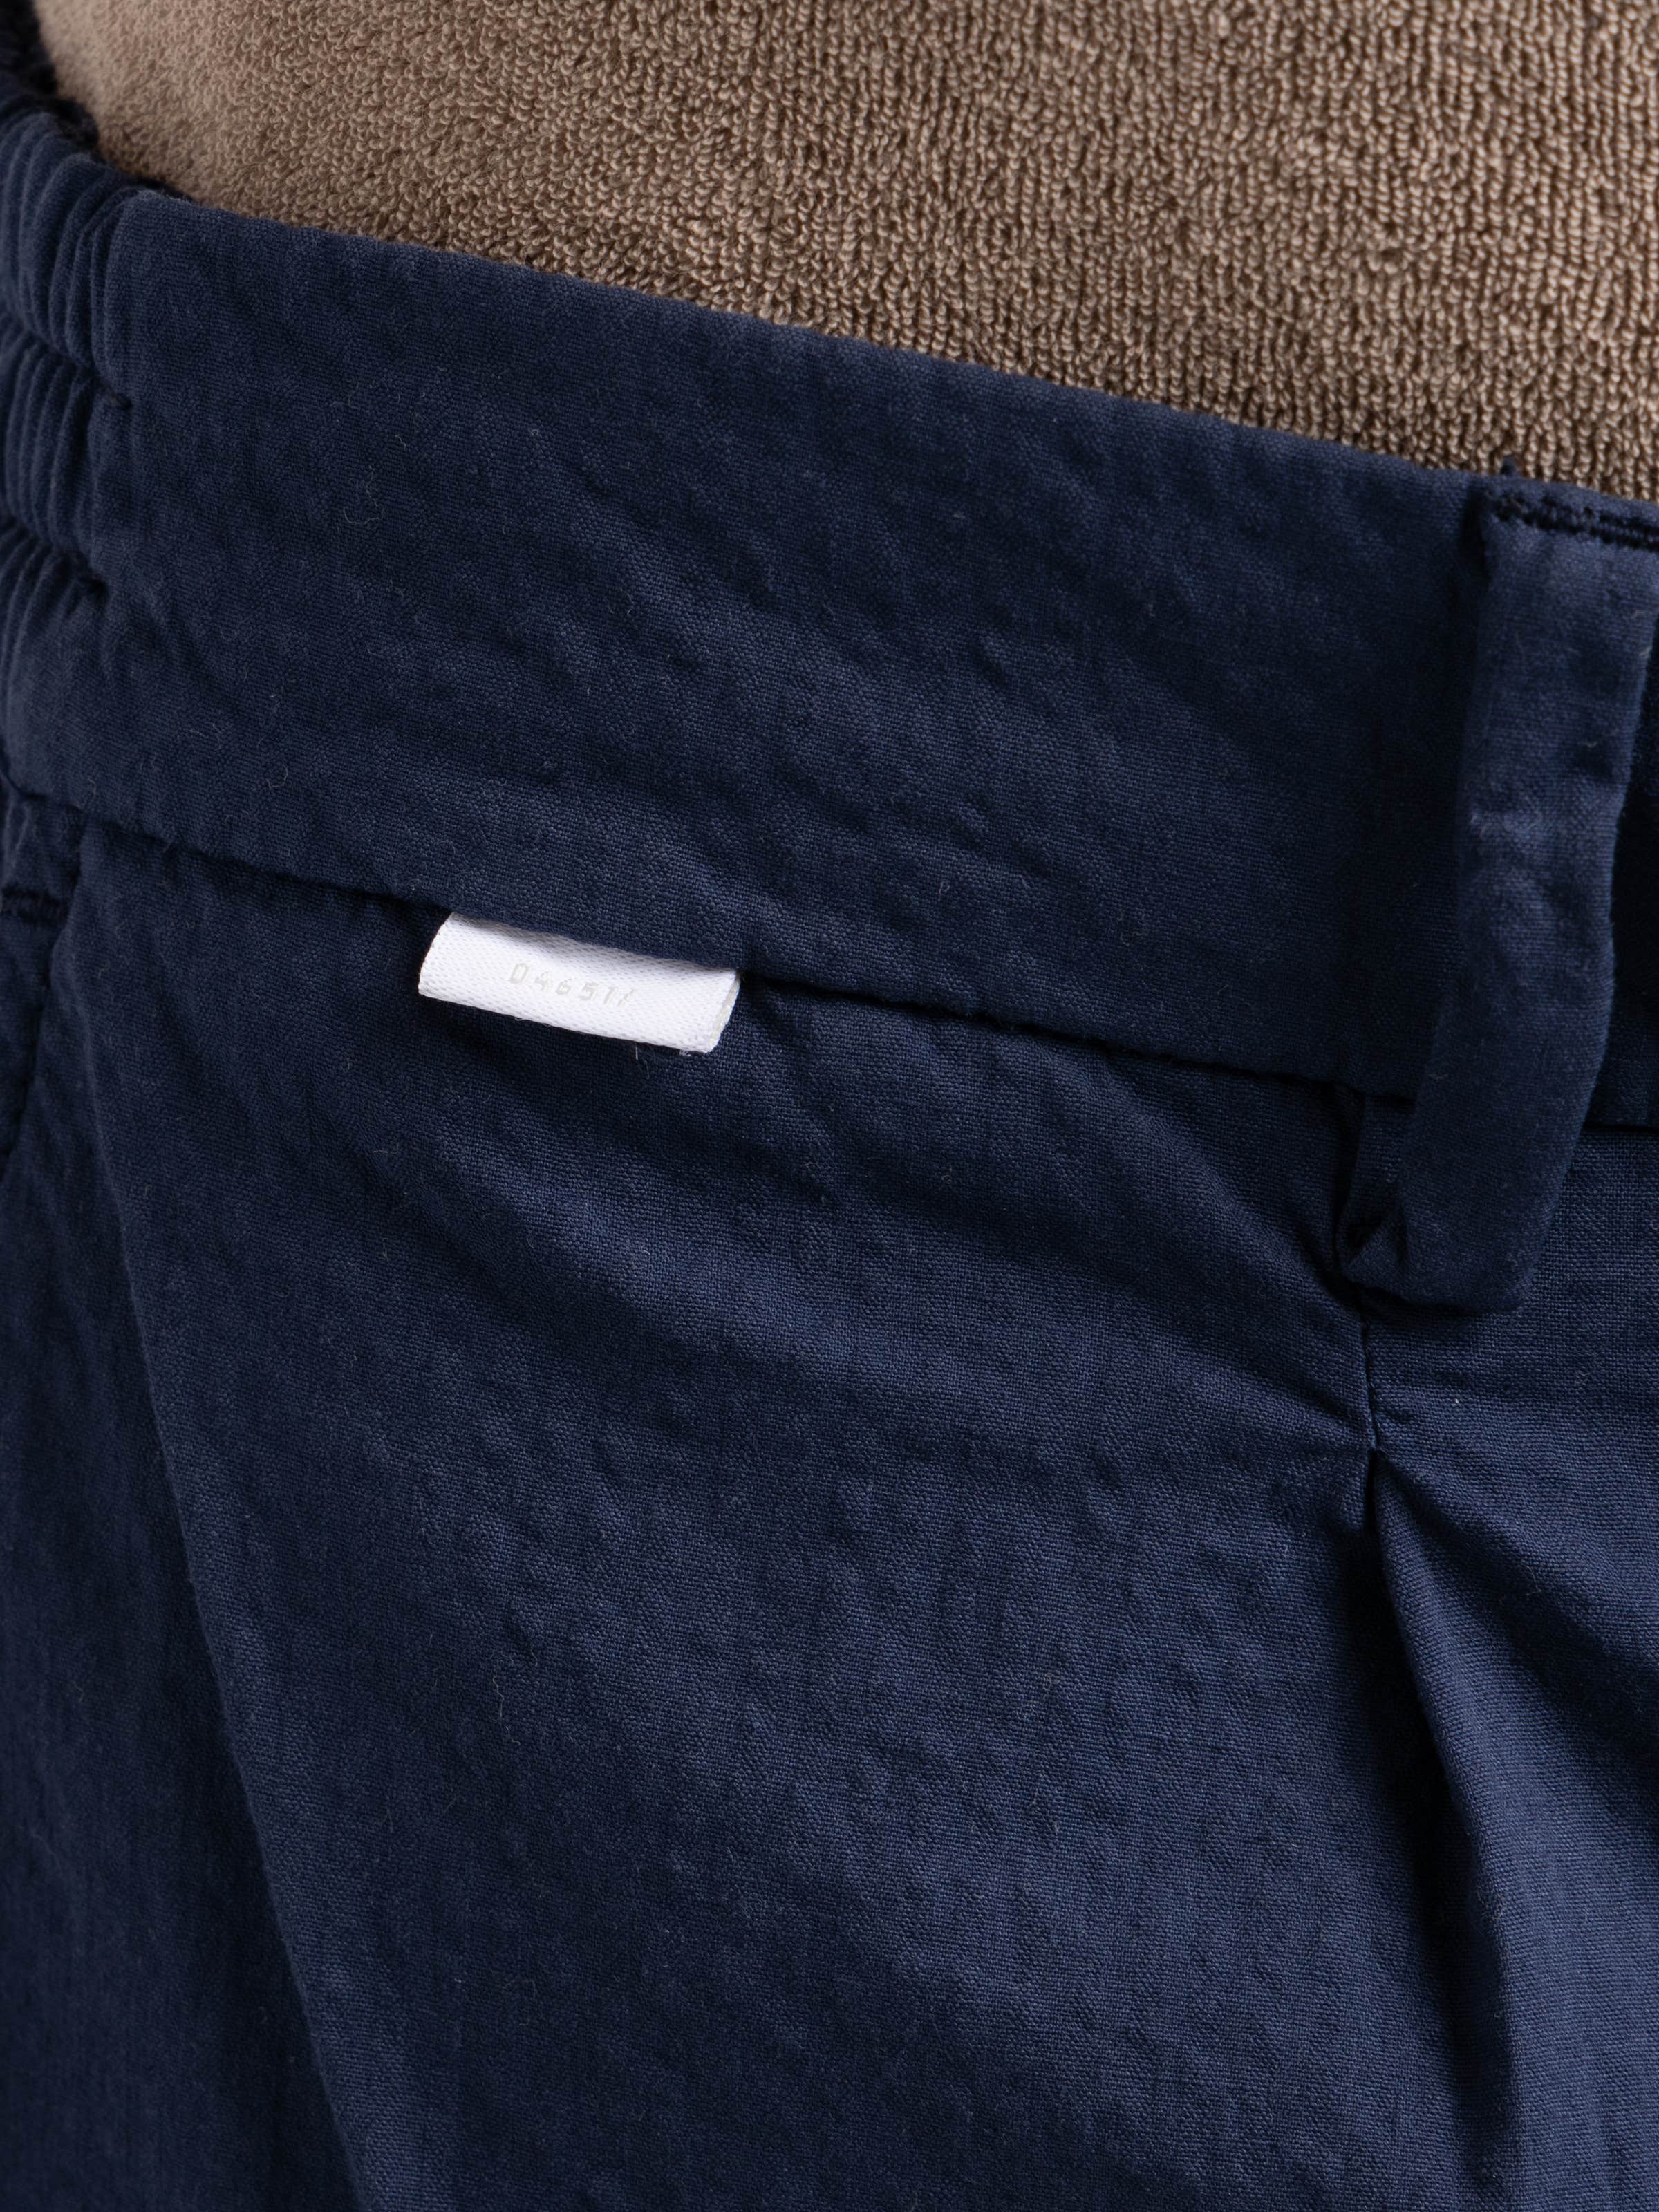 Navy Cotton Weiss Trouser